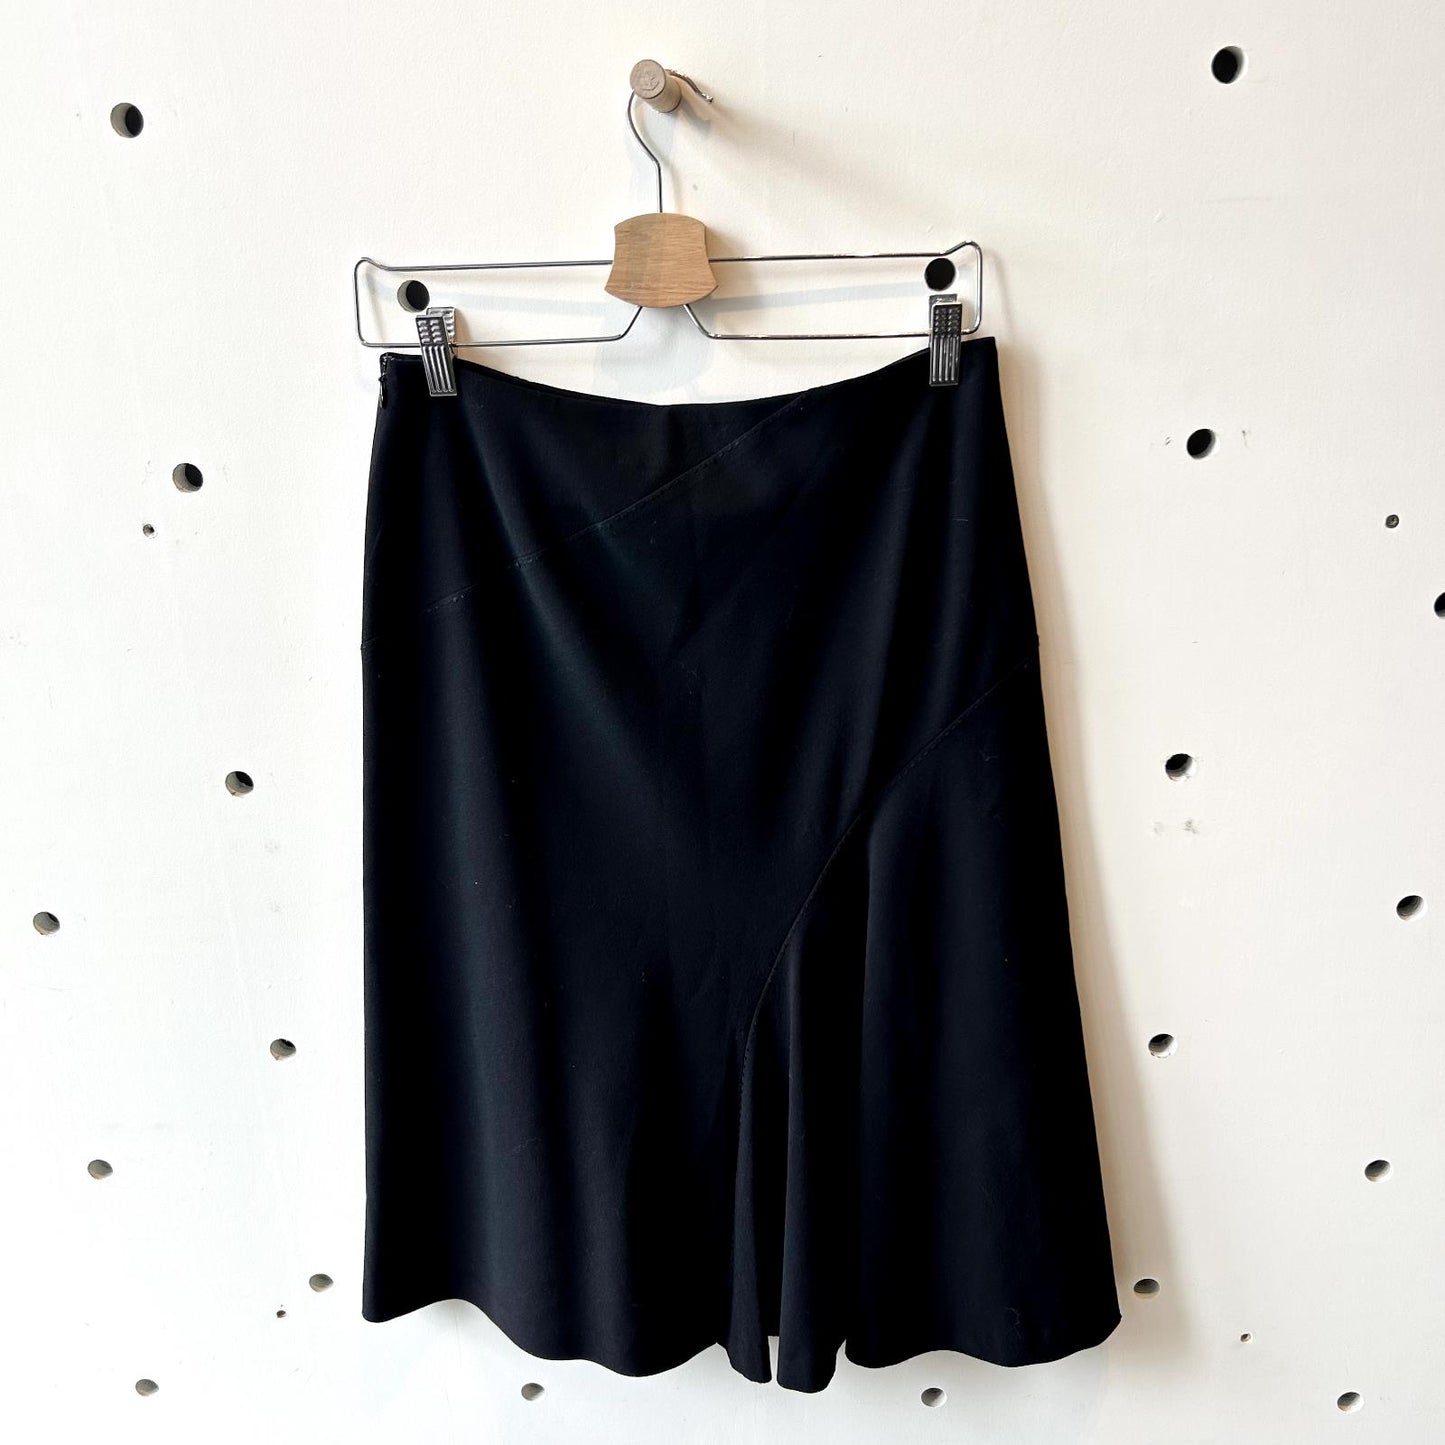 S - Fete by Issey Miyake Japan Black Knee Length Wool Blend Skirt 0504AK